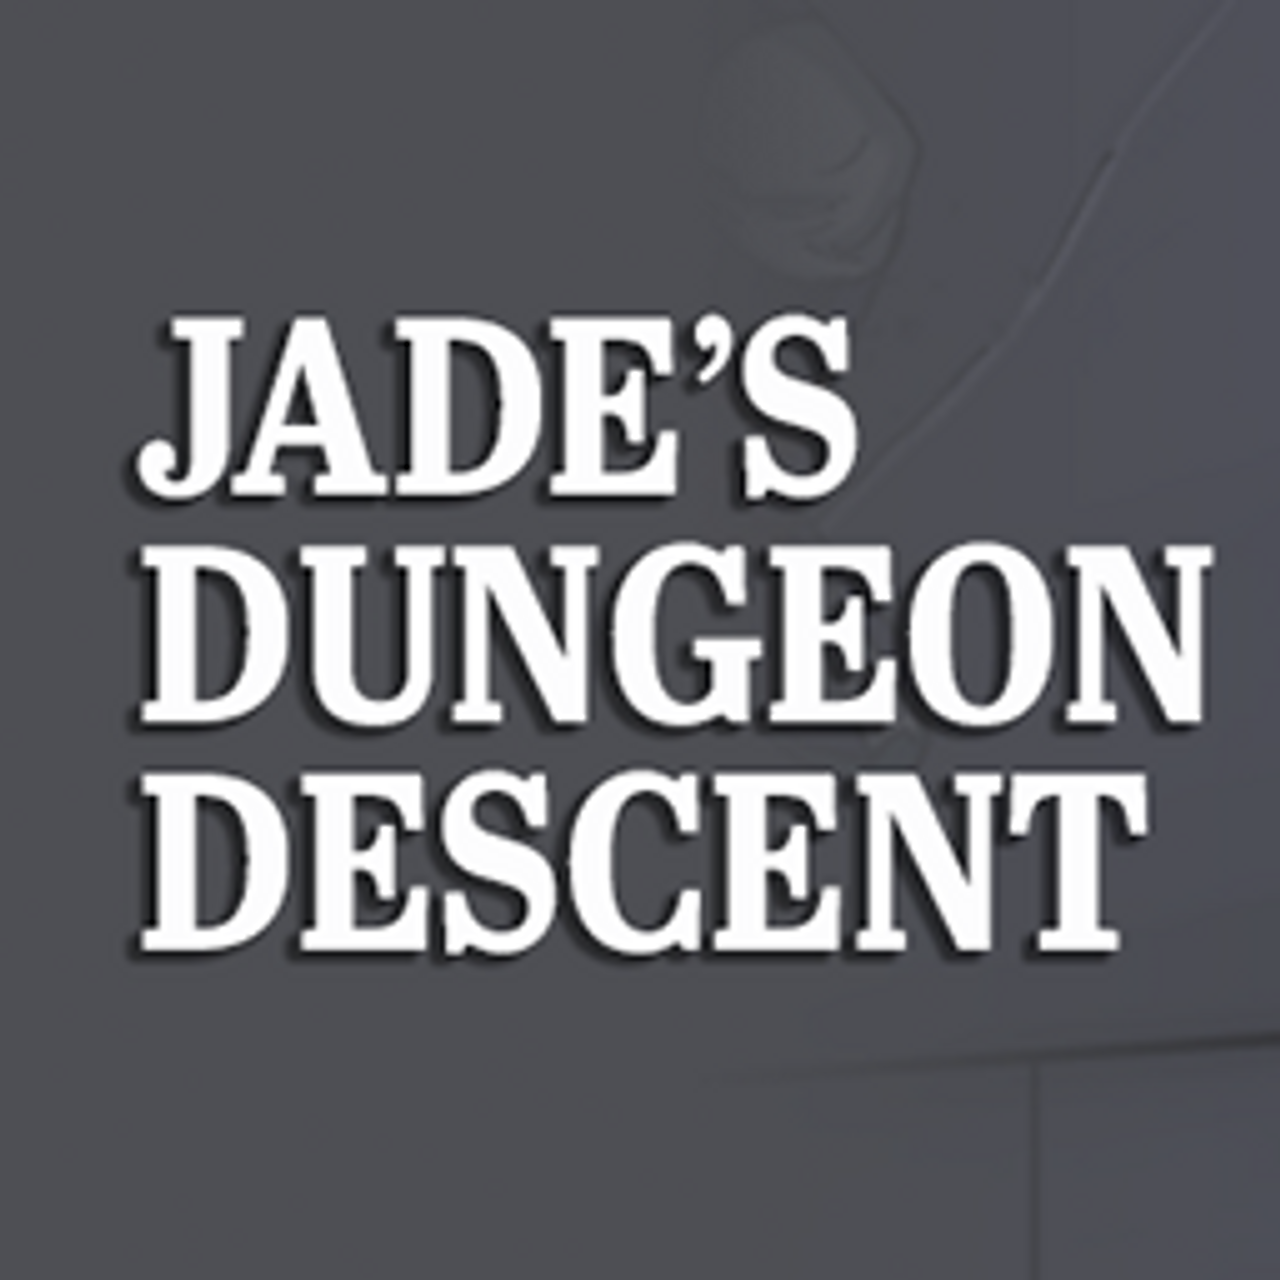 Jade's Dungeon Descent